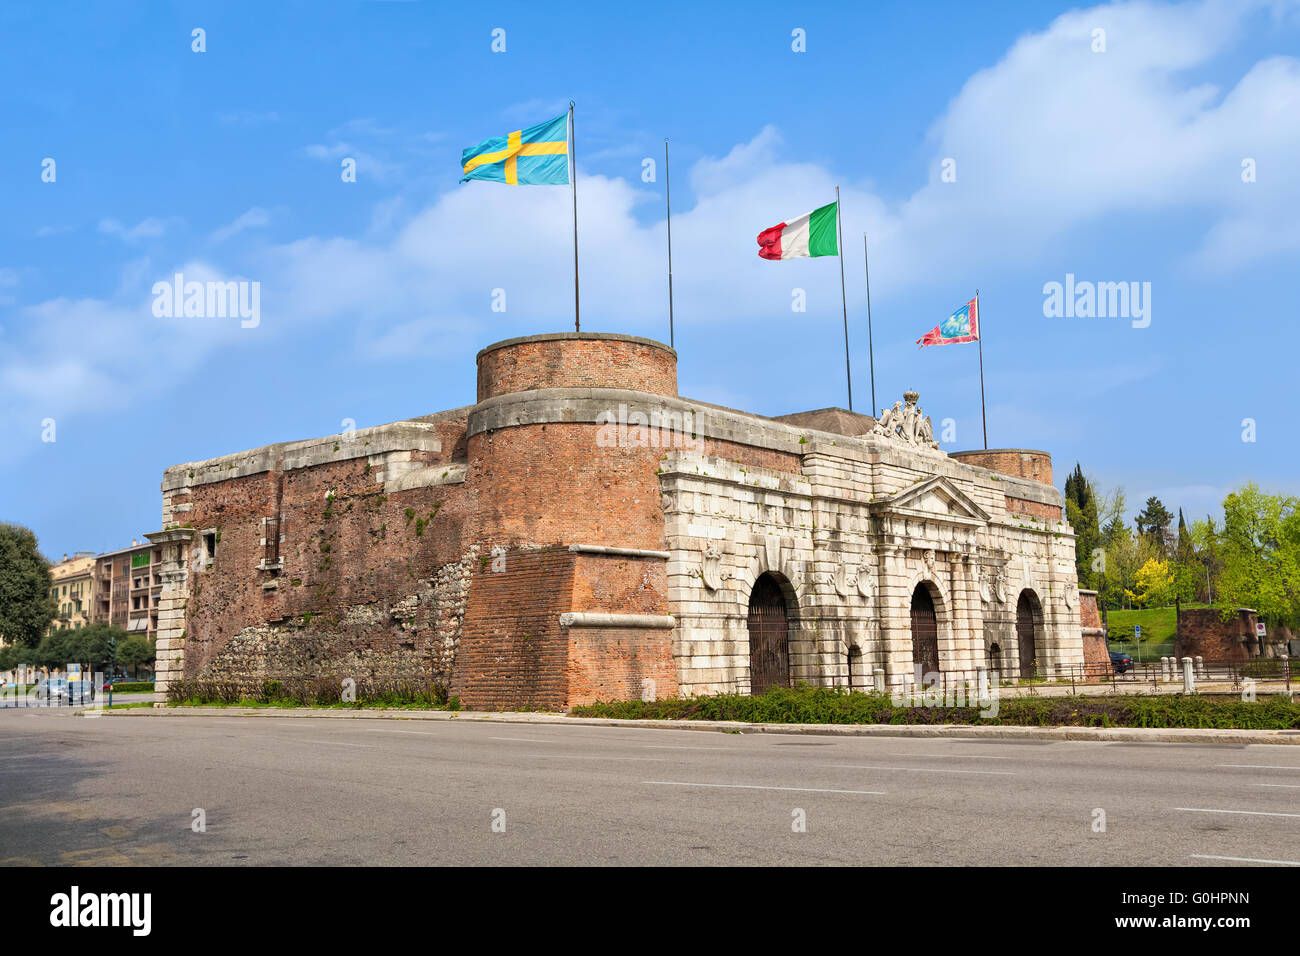 Porta Nuova - una monumentale Porta della città di Verona eretta tra il 1532 e il 1540 Foto Stock